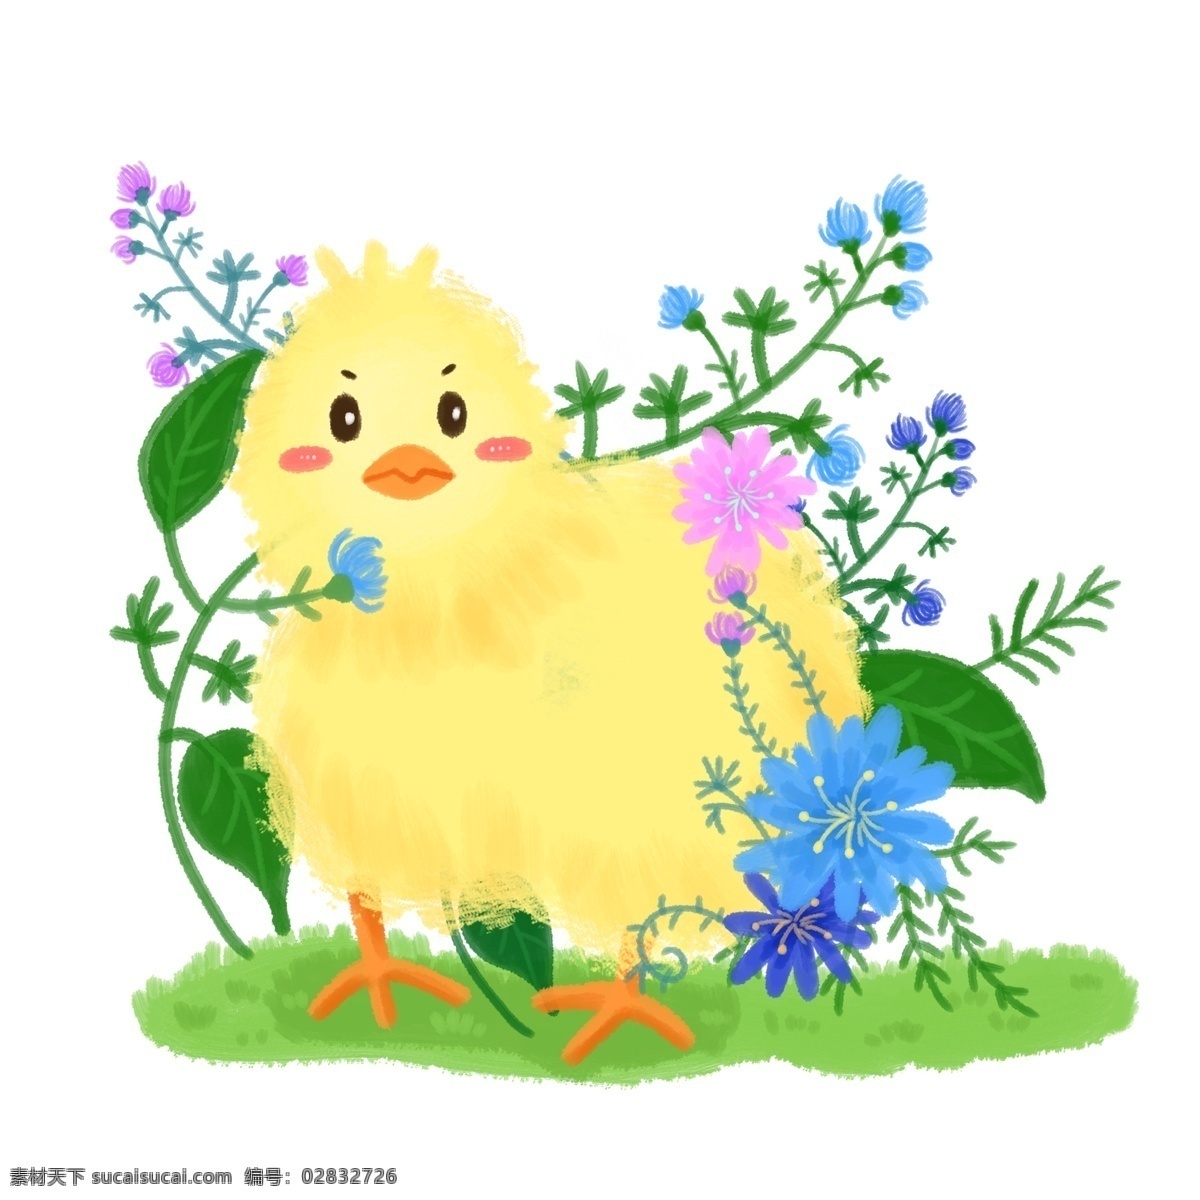 春天 植物 动物 小鸡 插 画风 插画风 春季 春 花 叶子 绿色 紫色 蓝色 黄色 鸡 小鸡仔 可爱